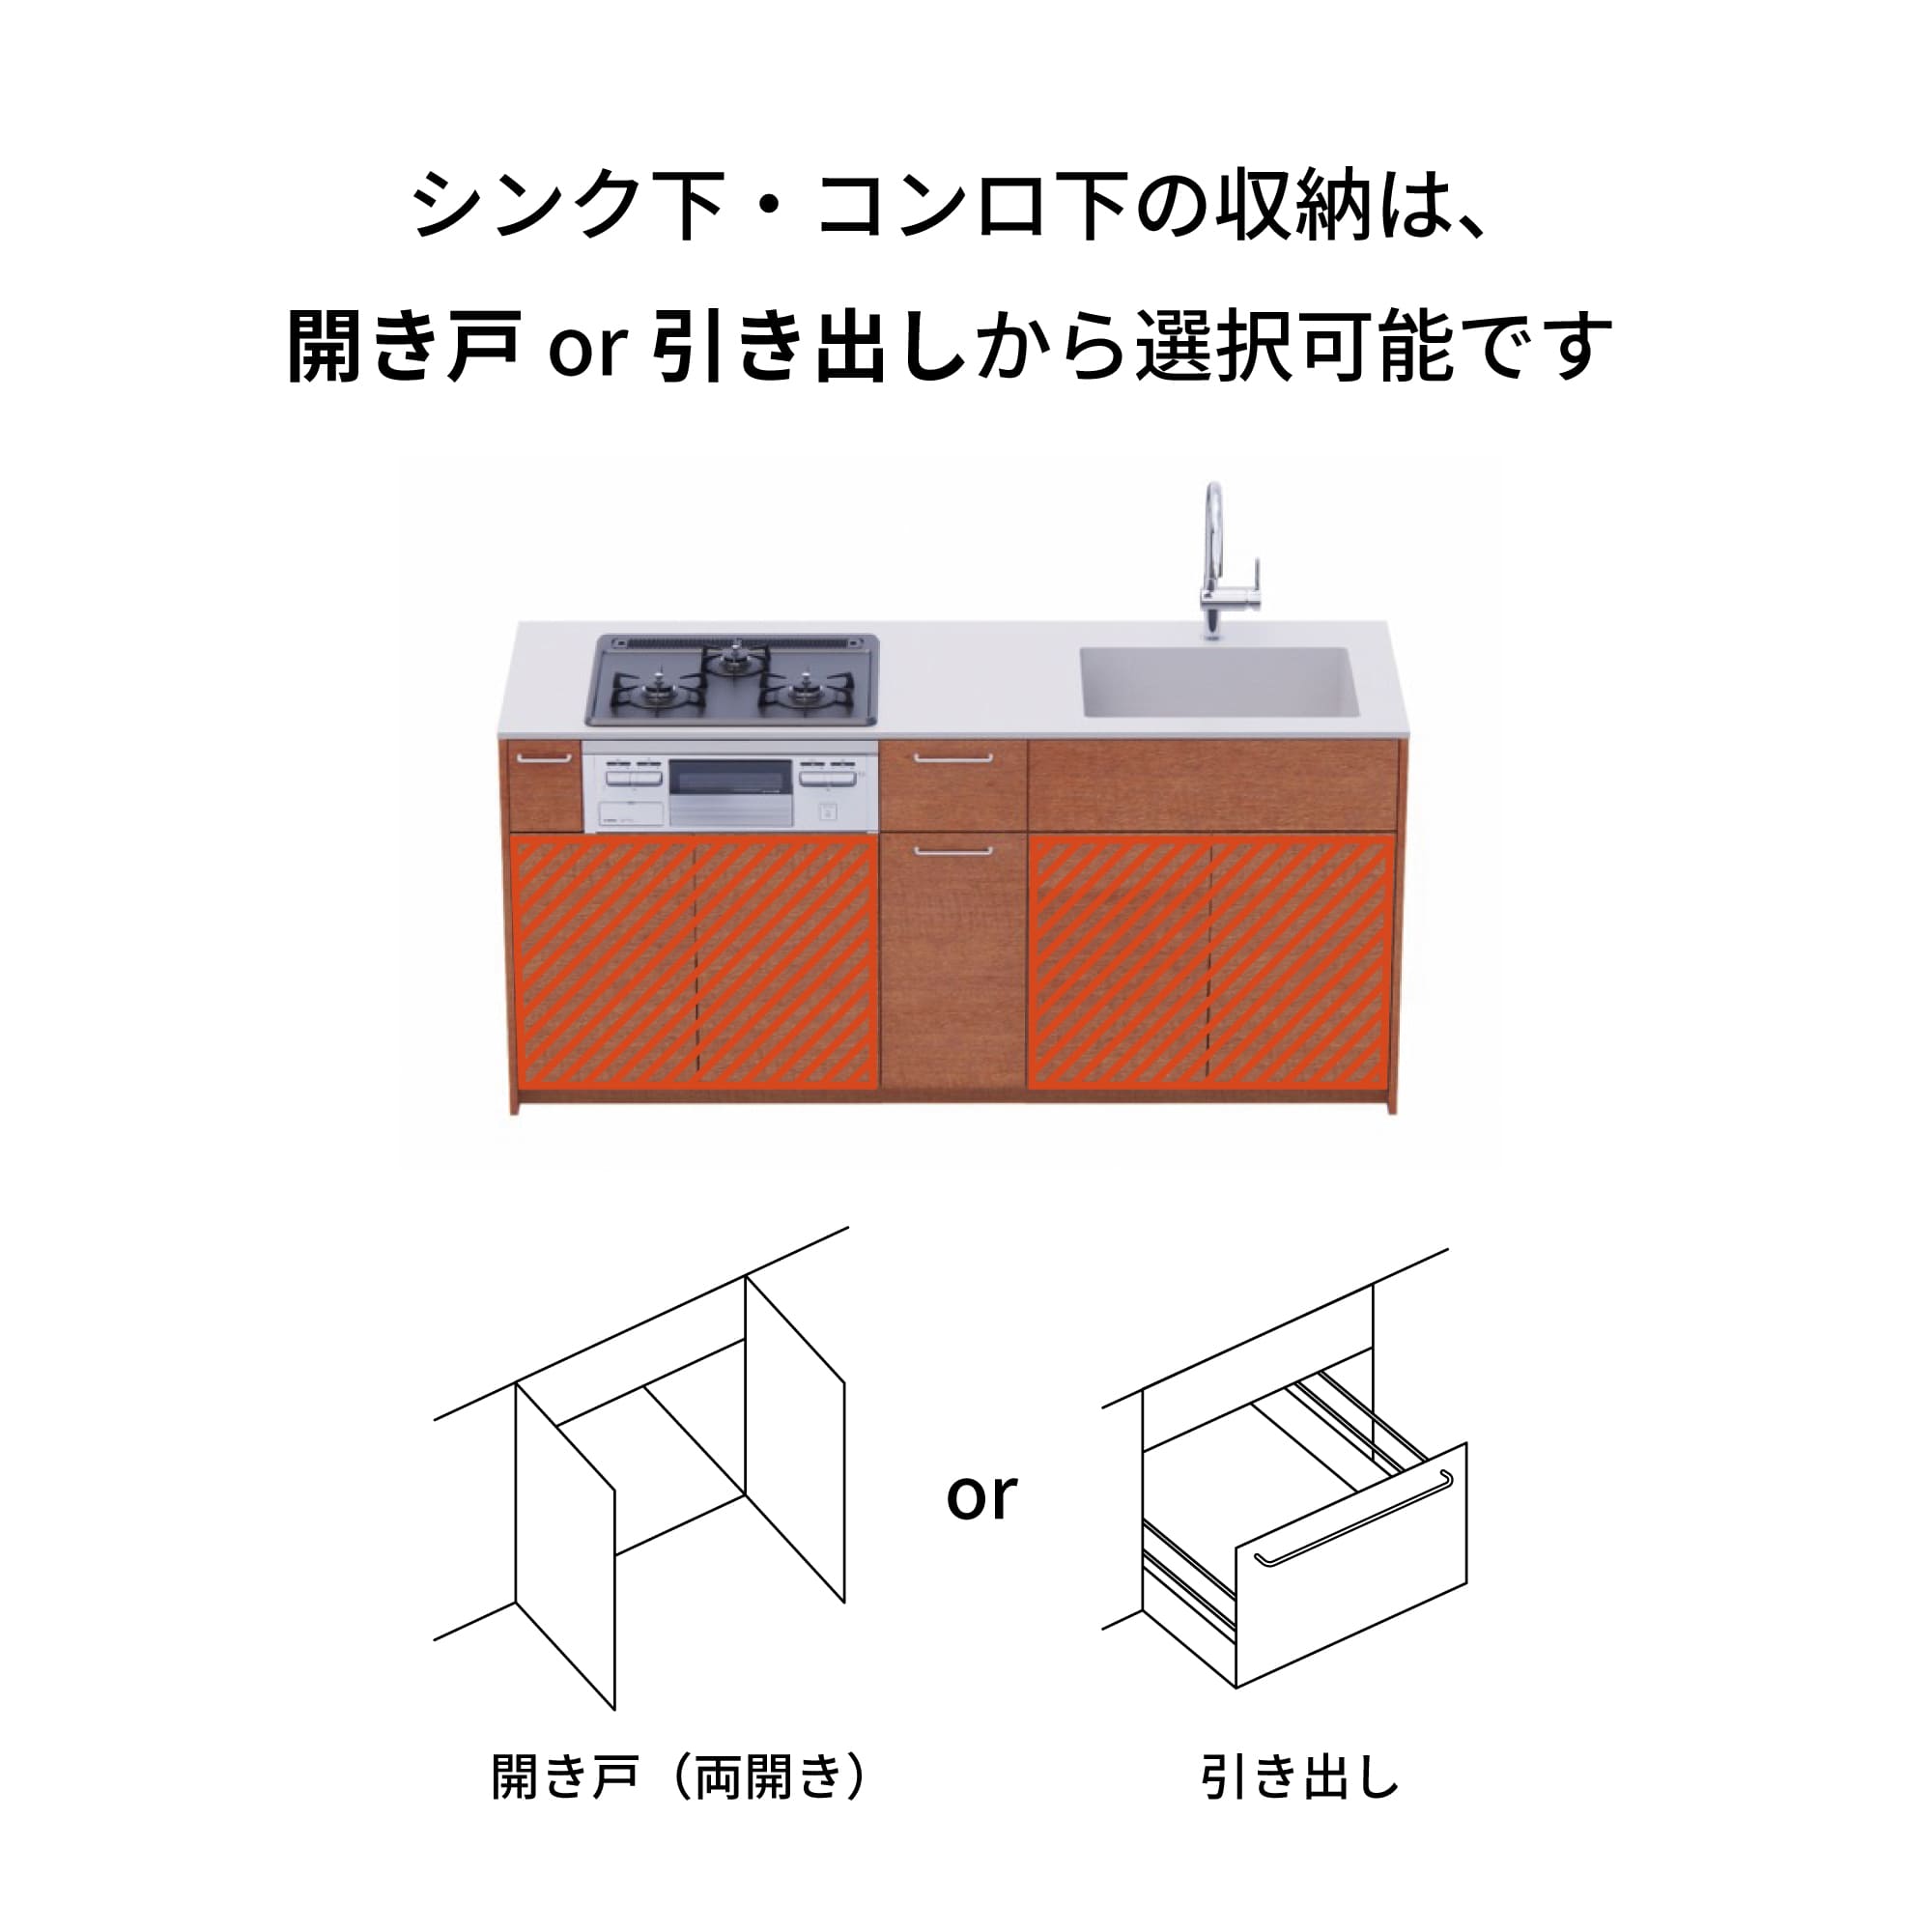 木製システムキッチン 対面型 W1840・コンロなし / オーブンなし / 食洗機なし KB-KC022-30-G183 引き出し下とコンロ下の収納が選択可能です